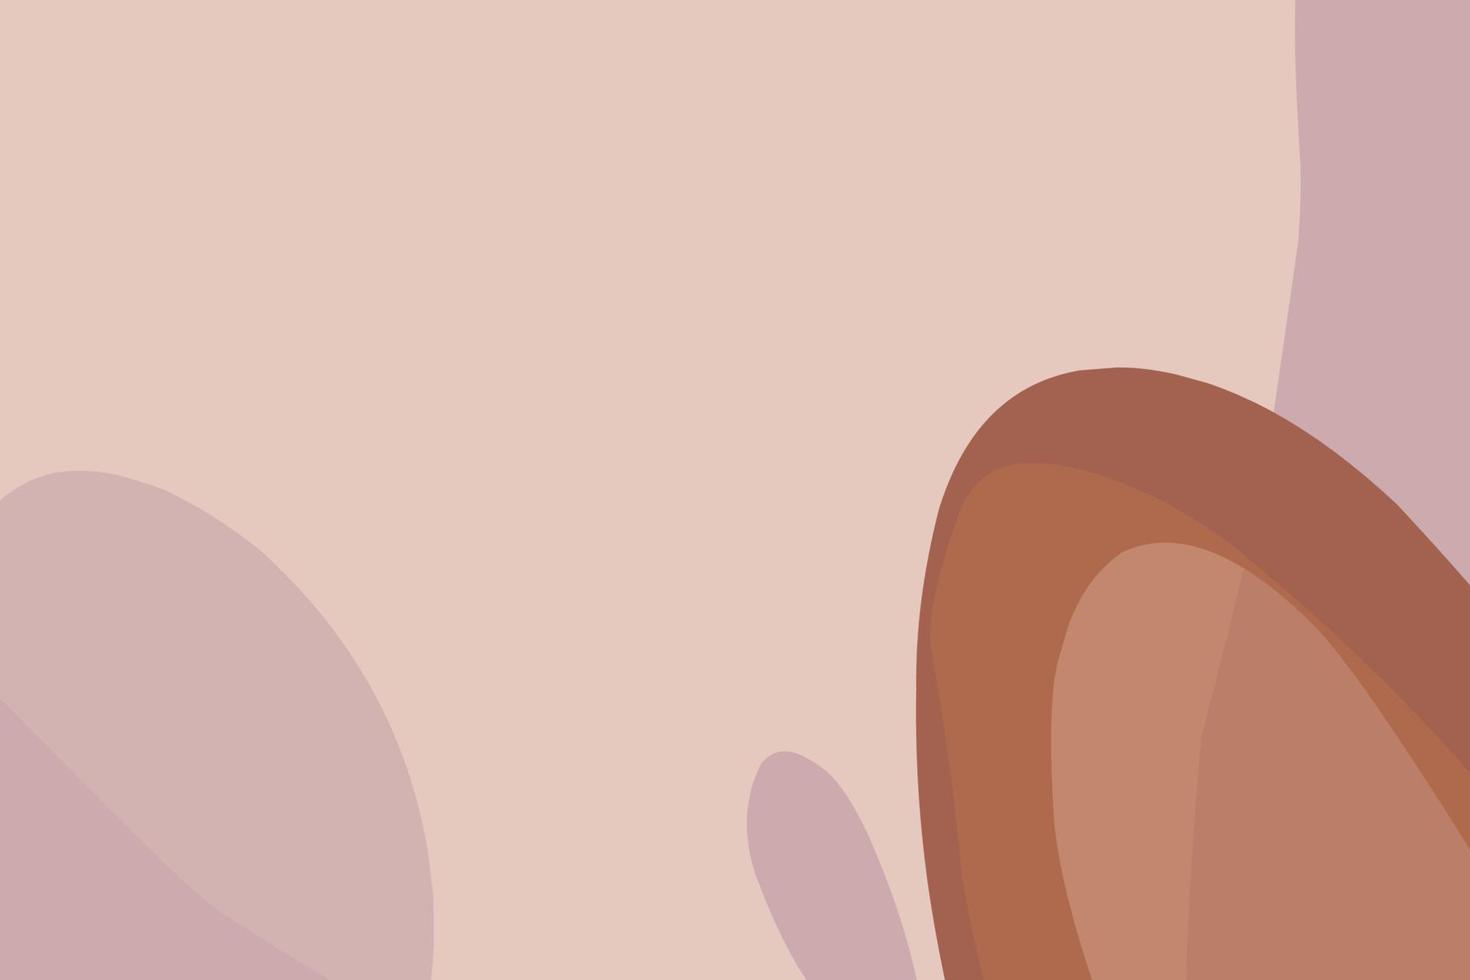 plantillas elegantes con formas orgánicas abstractas y líneas en colores nude. fondo pastel en estilo minimalista. ilustración vectorial contemporánea. fondo neutro en estilo minimalista vector